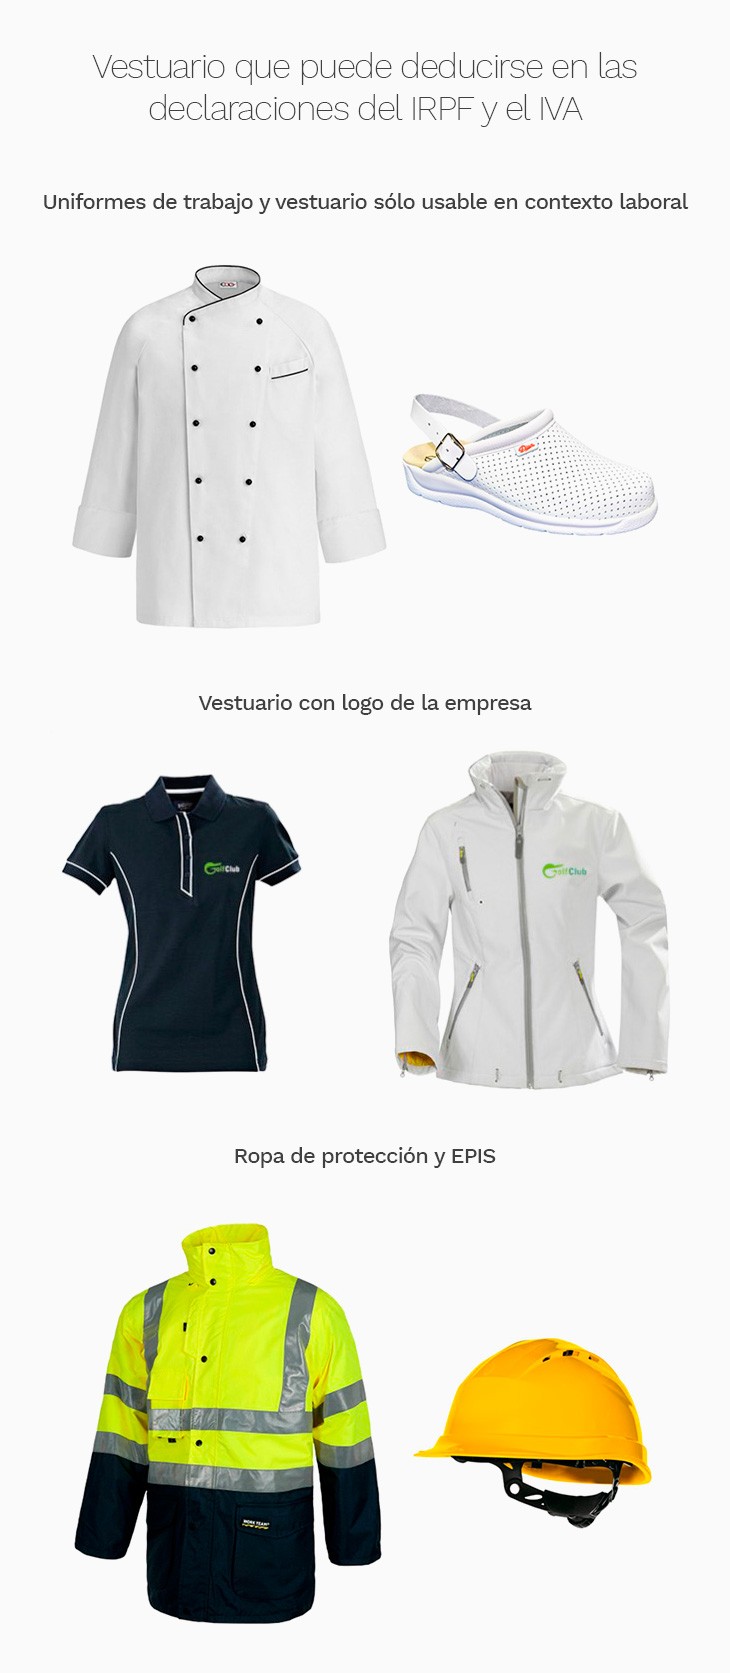 Ropa de trabajo, vestuario y uniformes laborales - euroUniforms